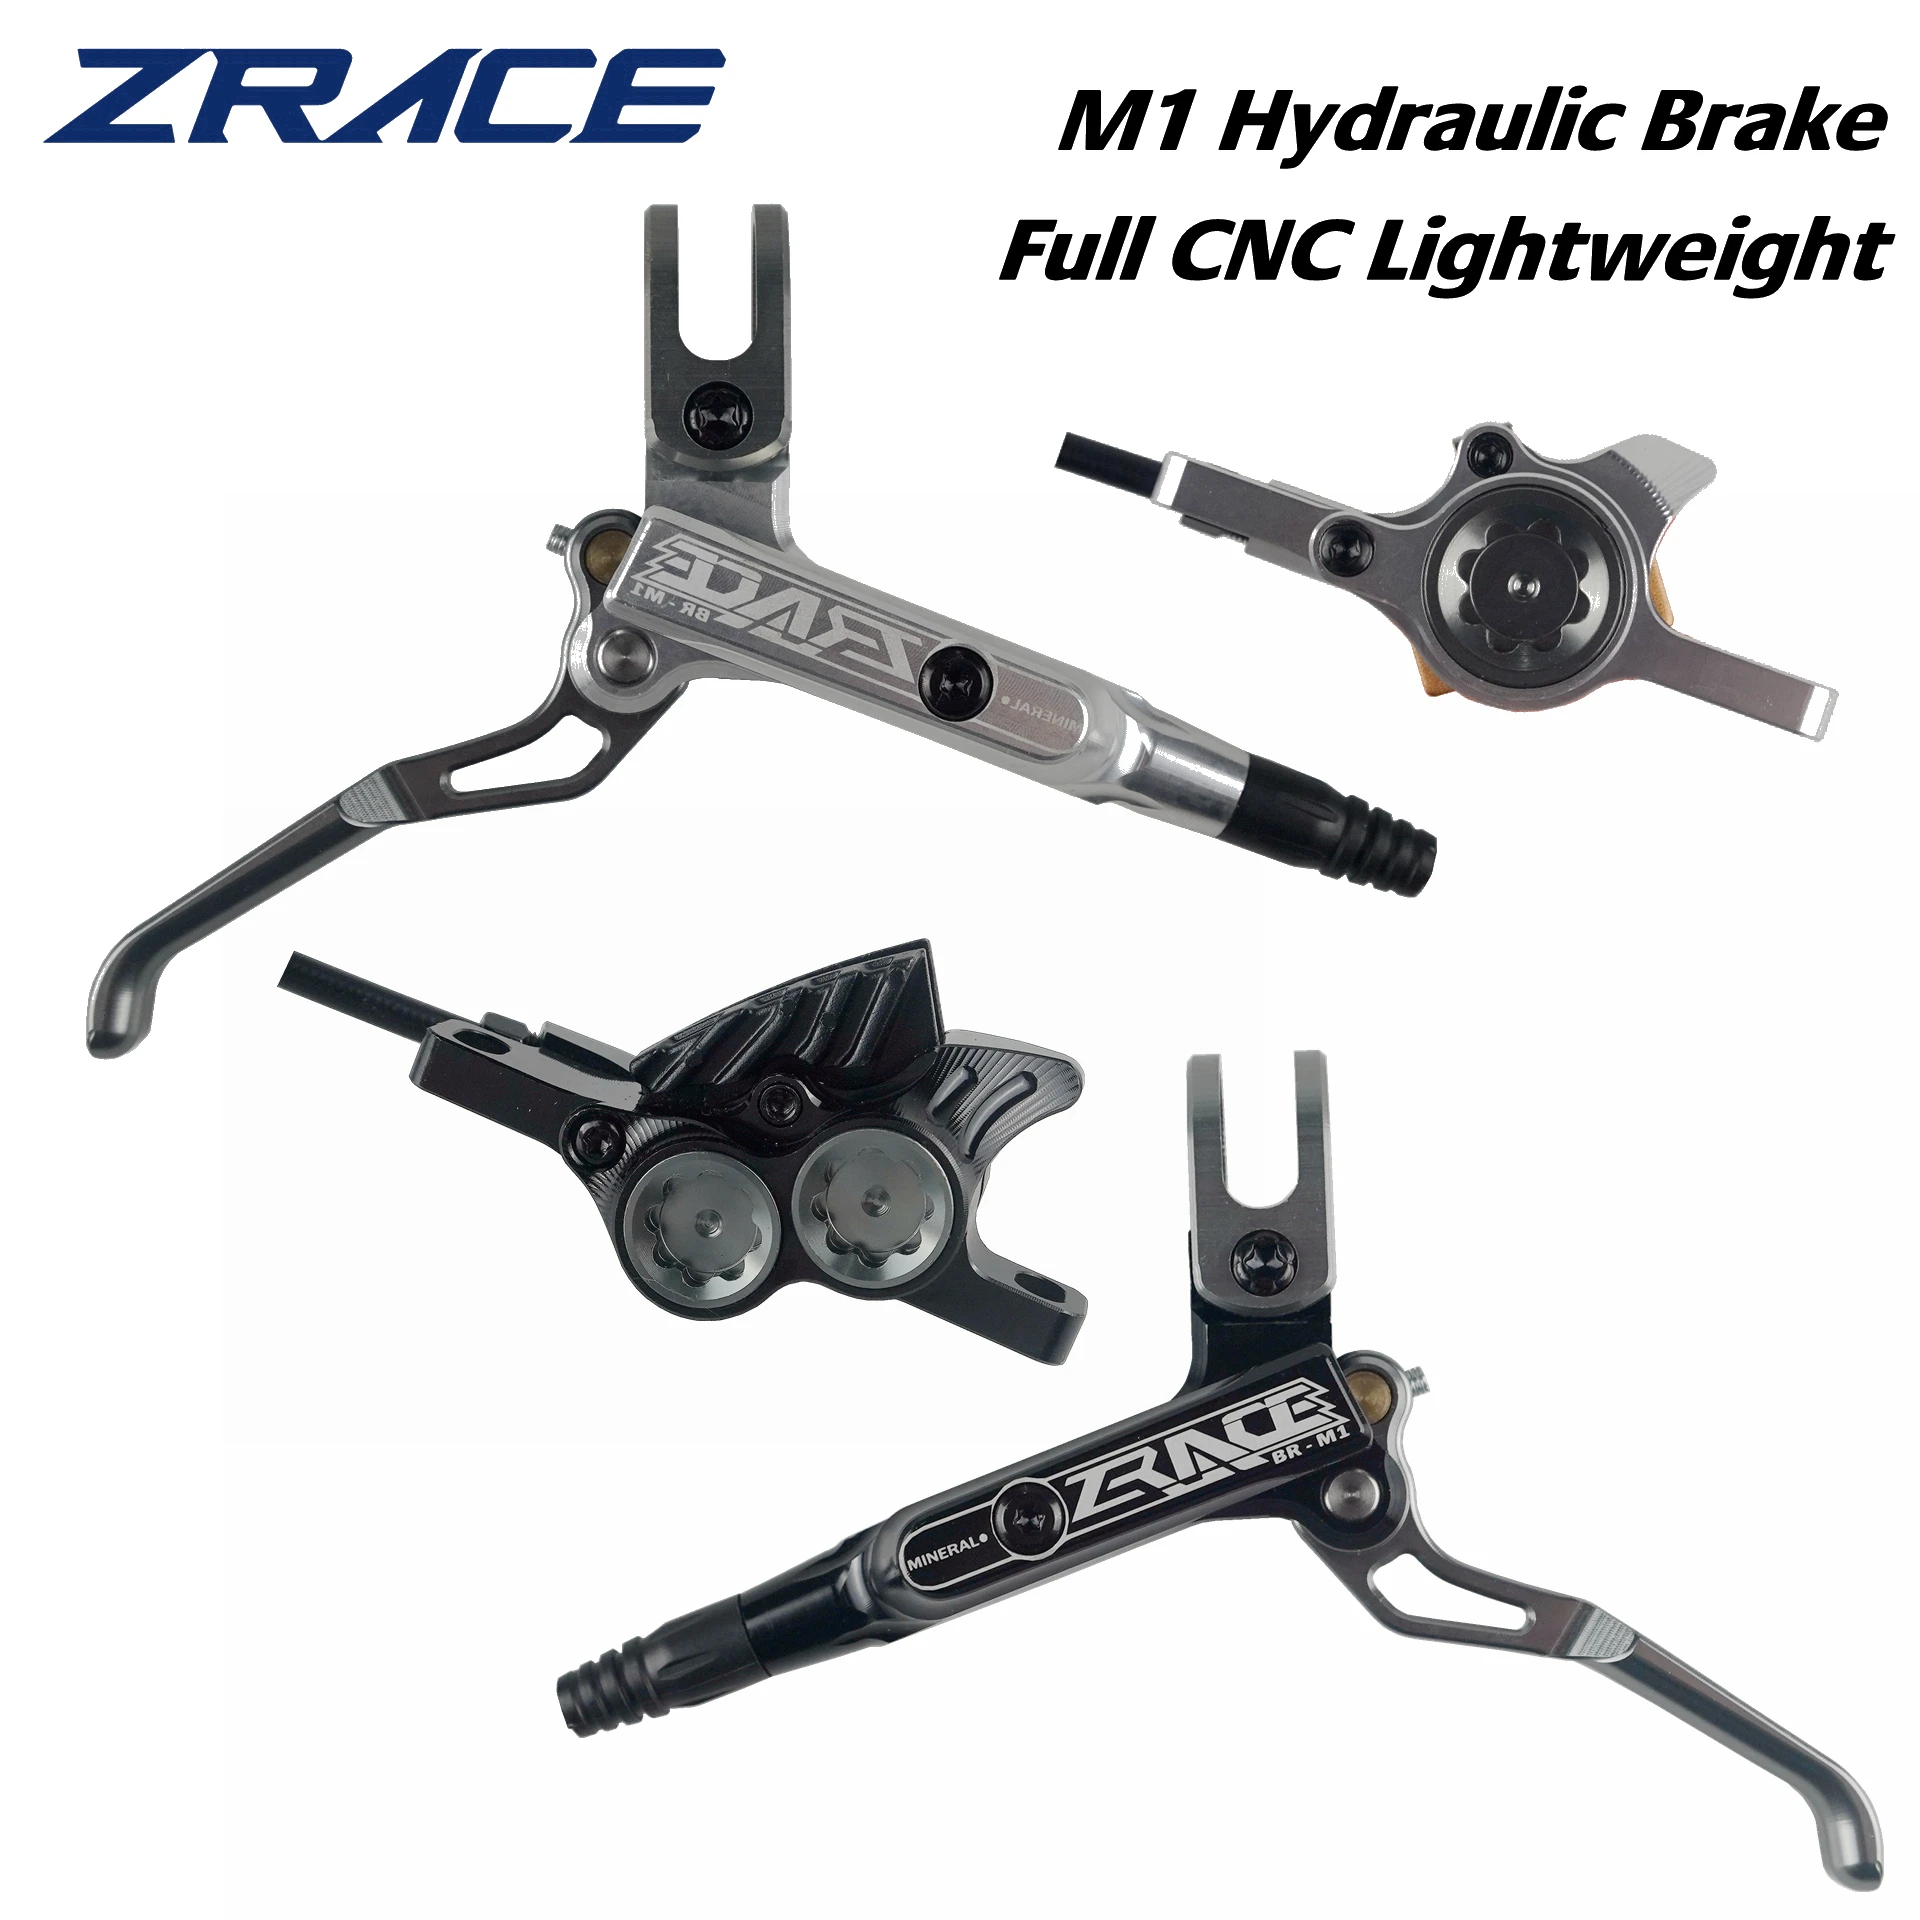 ZRACE-freno hidráulico para bicicleta de montaña M1 X2/X4, CNC completo,  ligero, juego de frenos